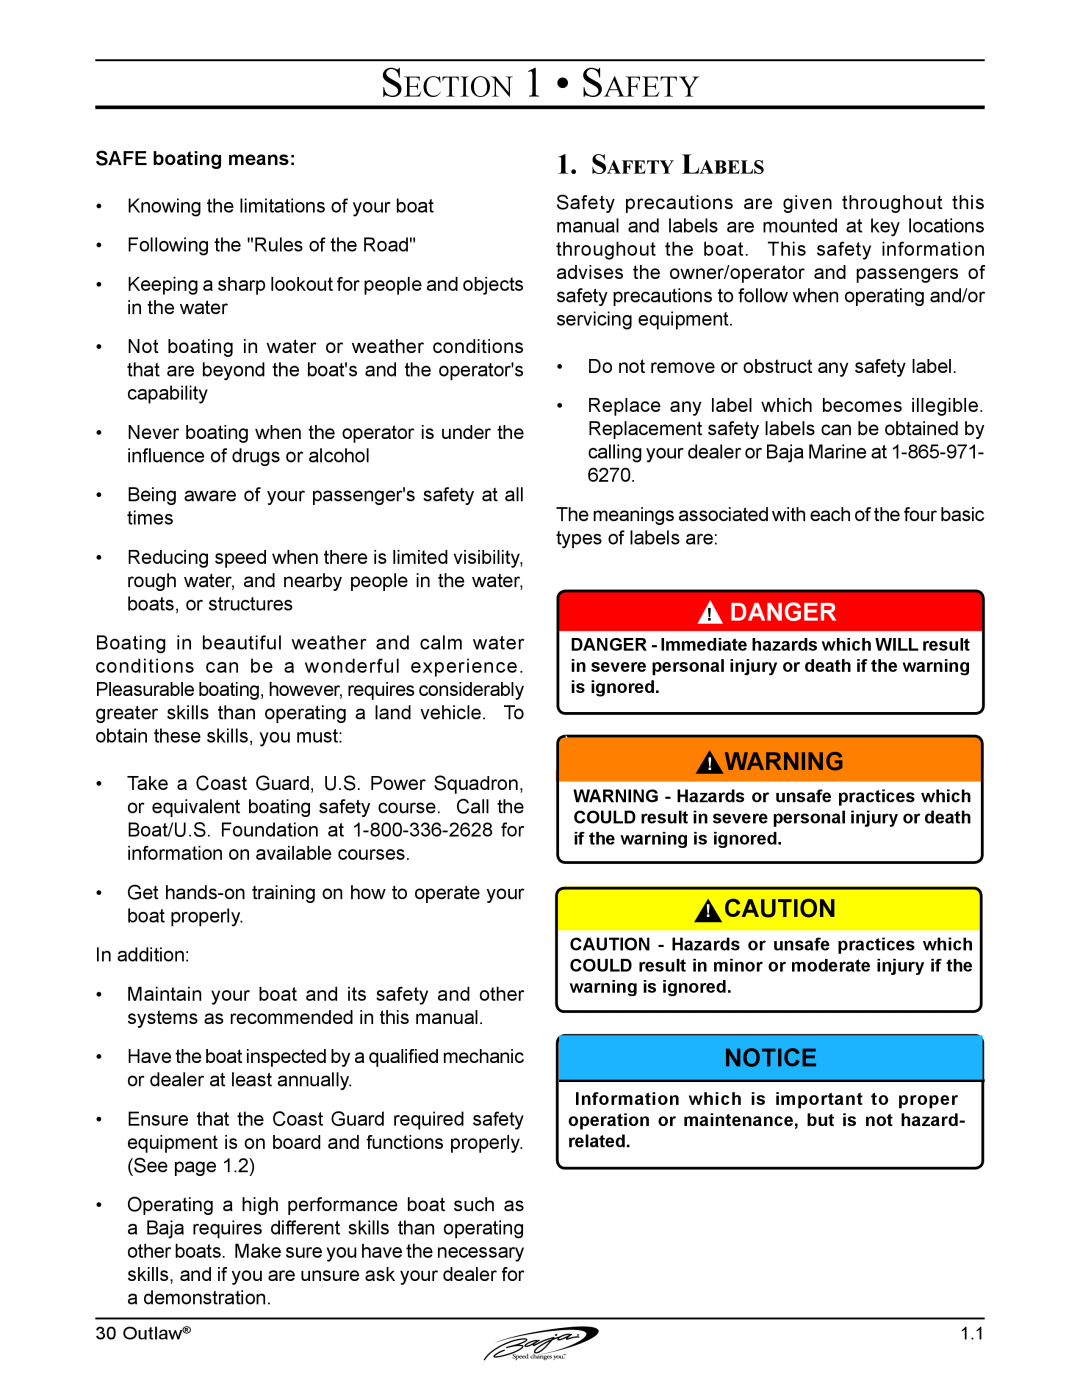 Baja Marine 30 manual Danger, SAFE boating means, Safety Labels 